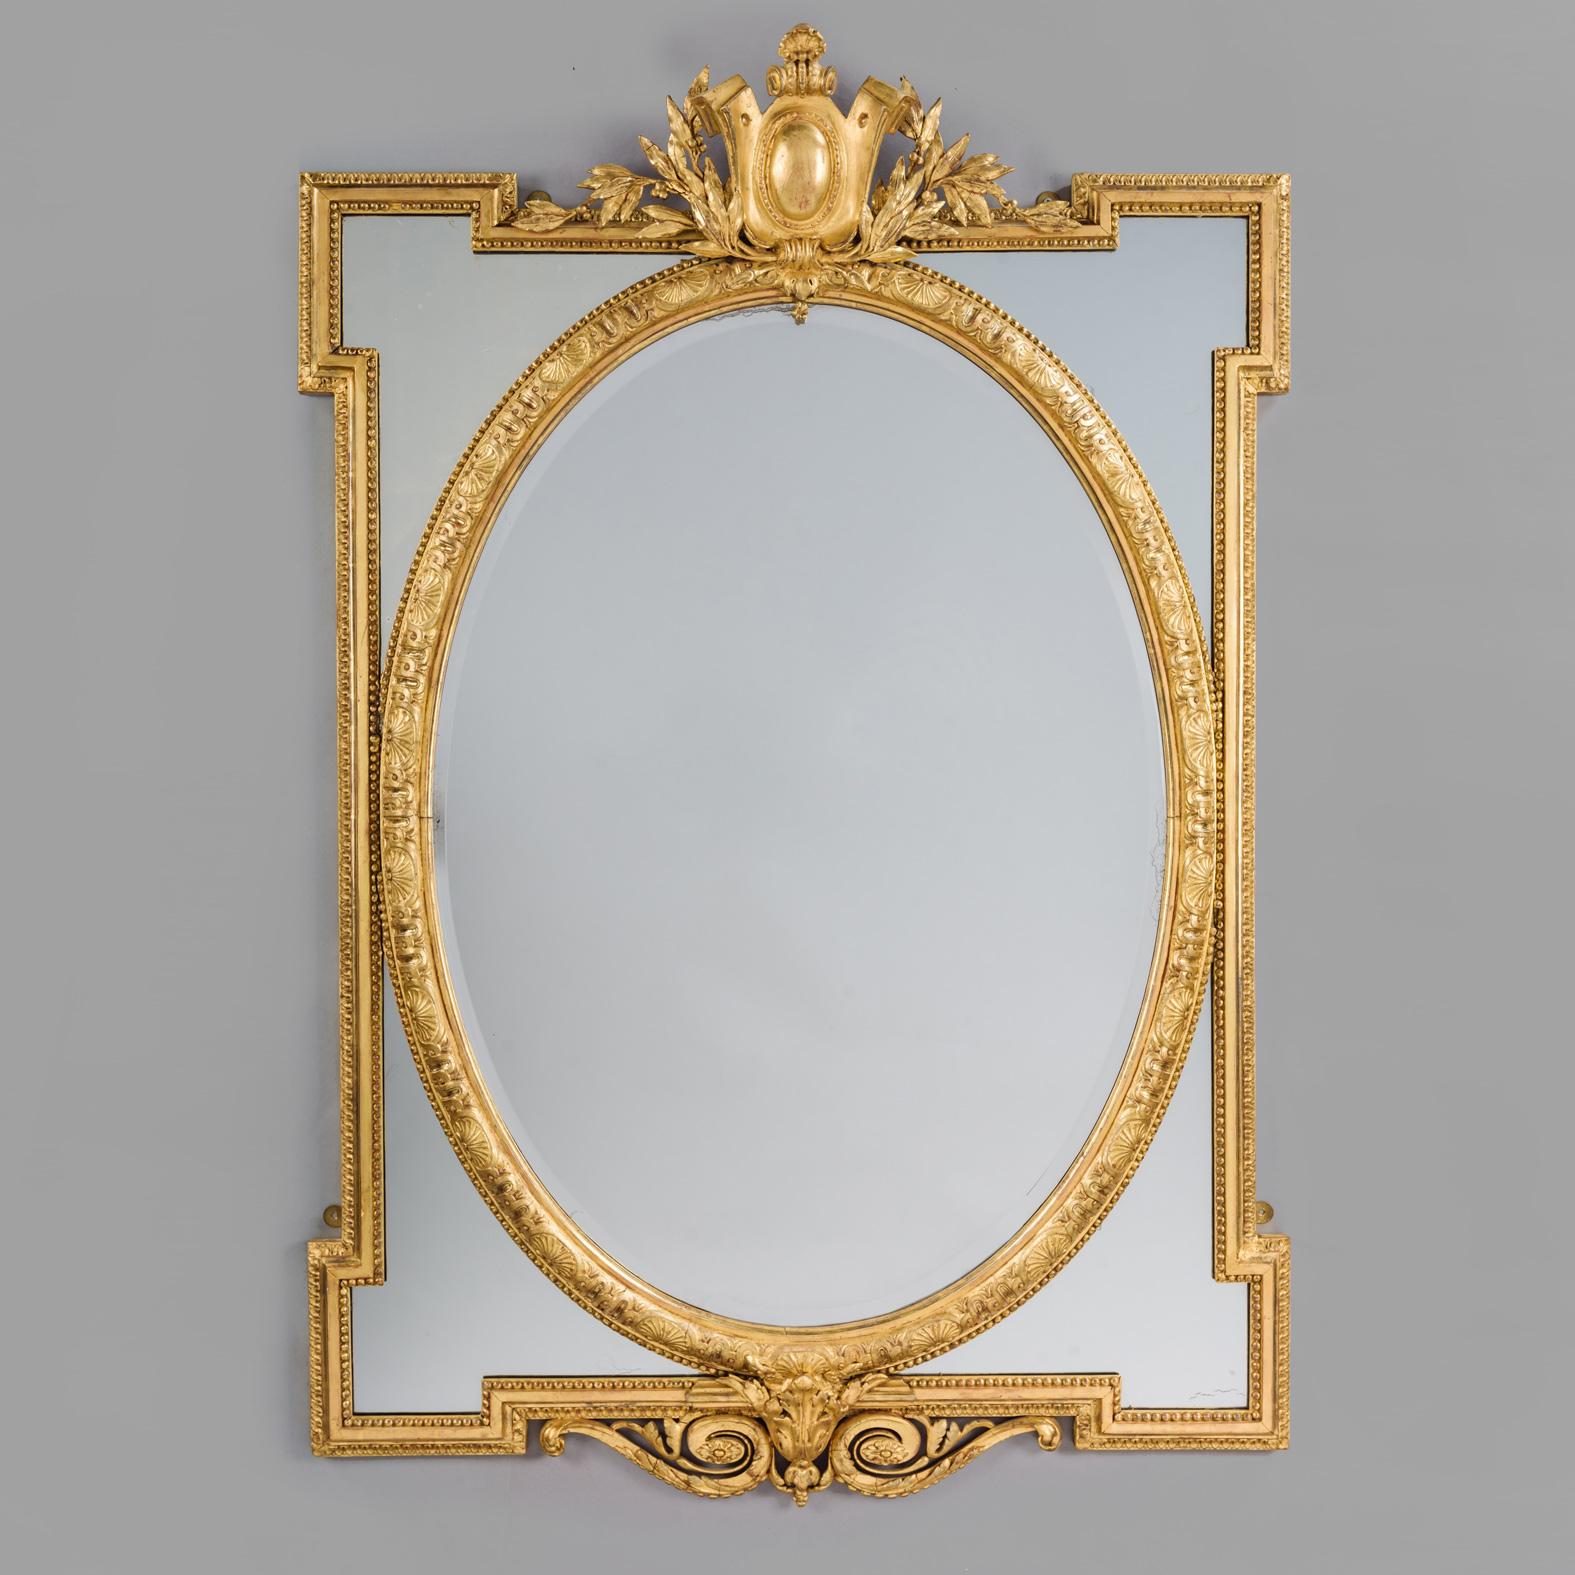 Paire de miroirs à encadrement marginal en bois doré de style Louis XVI. 

Cette paire de miroirs en bois doré et en géso sculpté présente une plaque ovale biseautée encadrée de quatre écoinçons en miroir dans des bordures moulées de perles et de